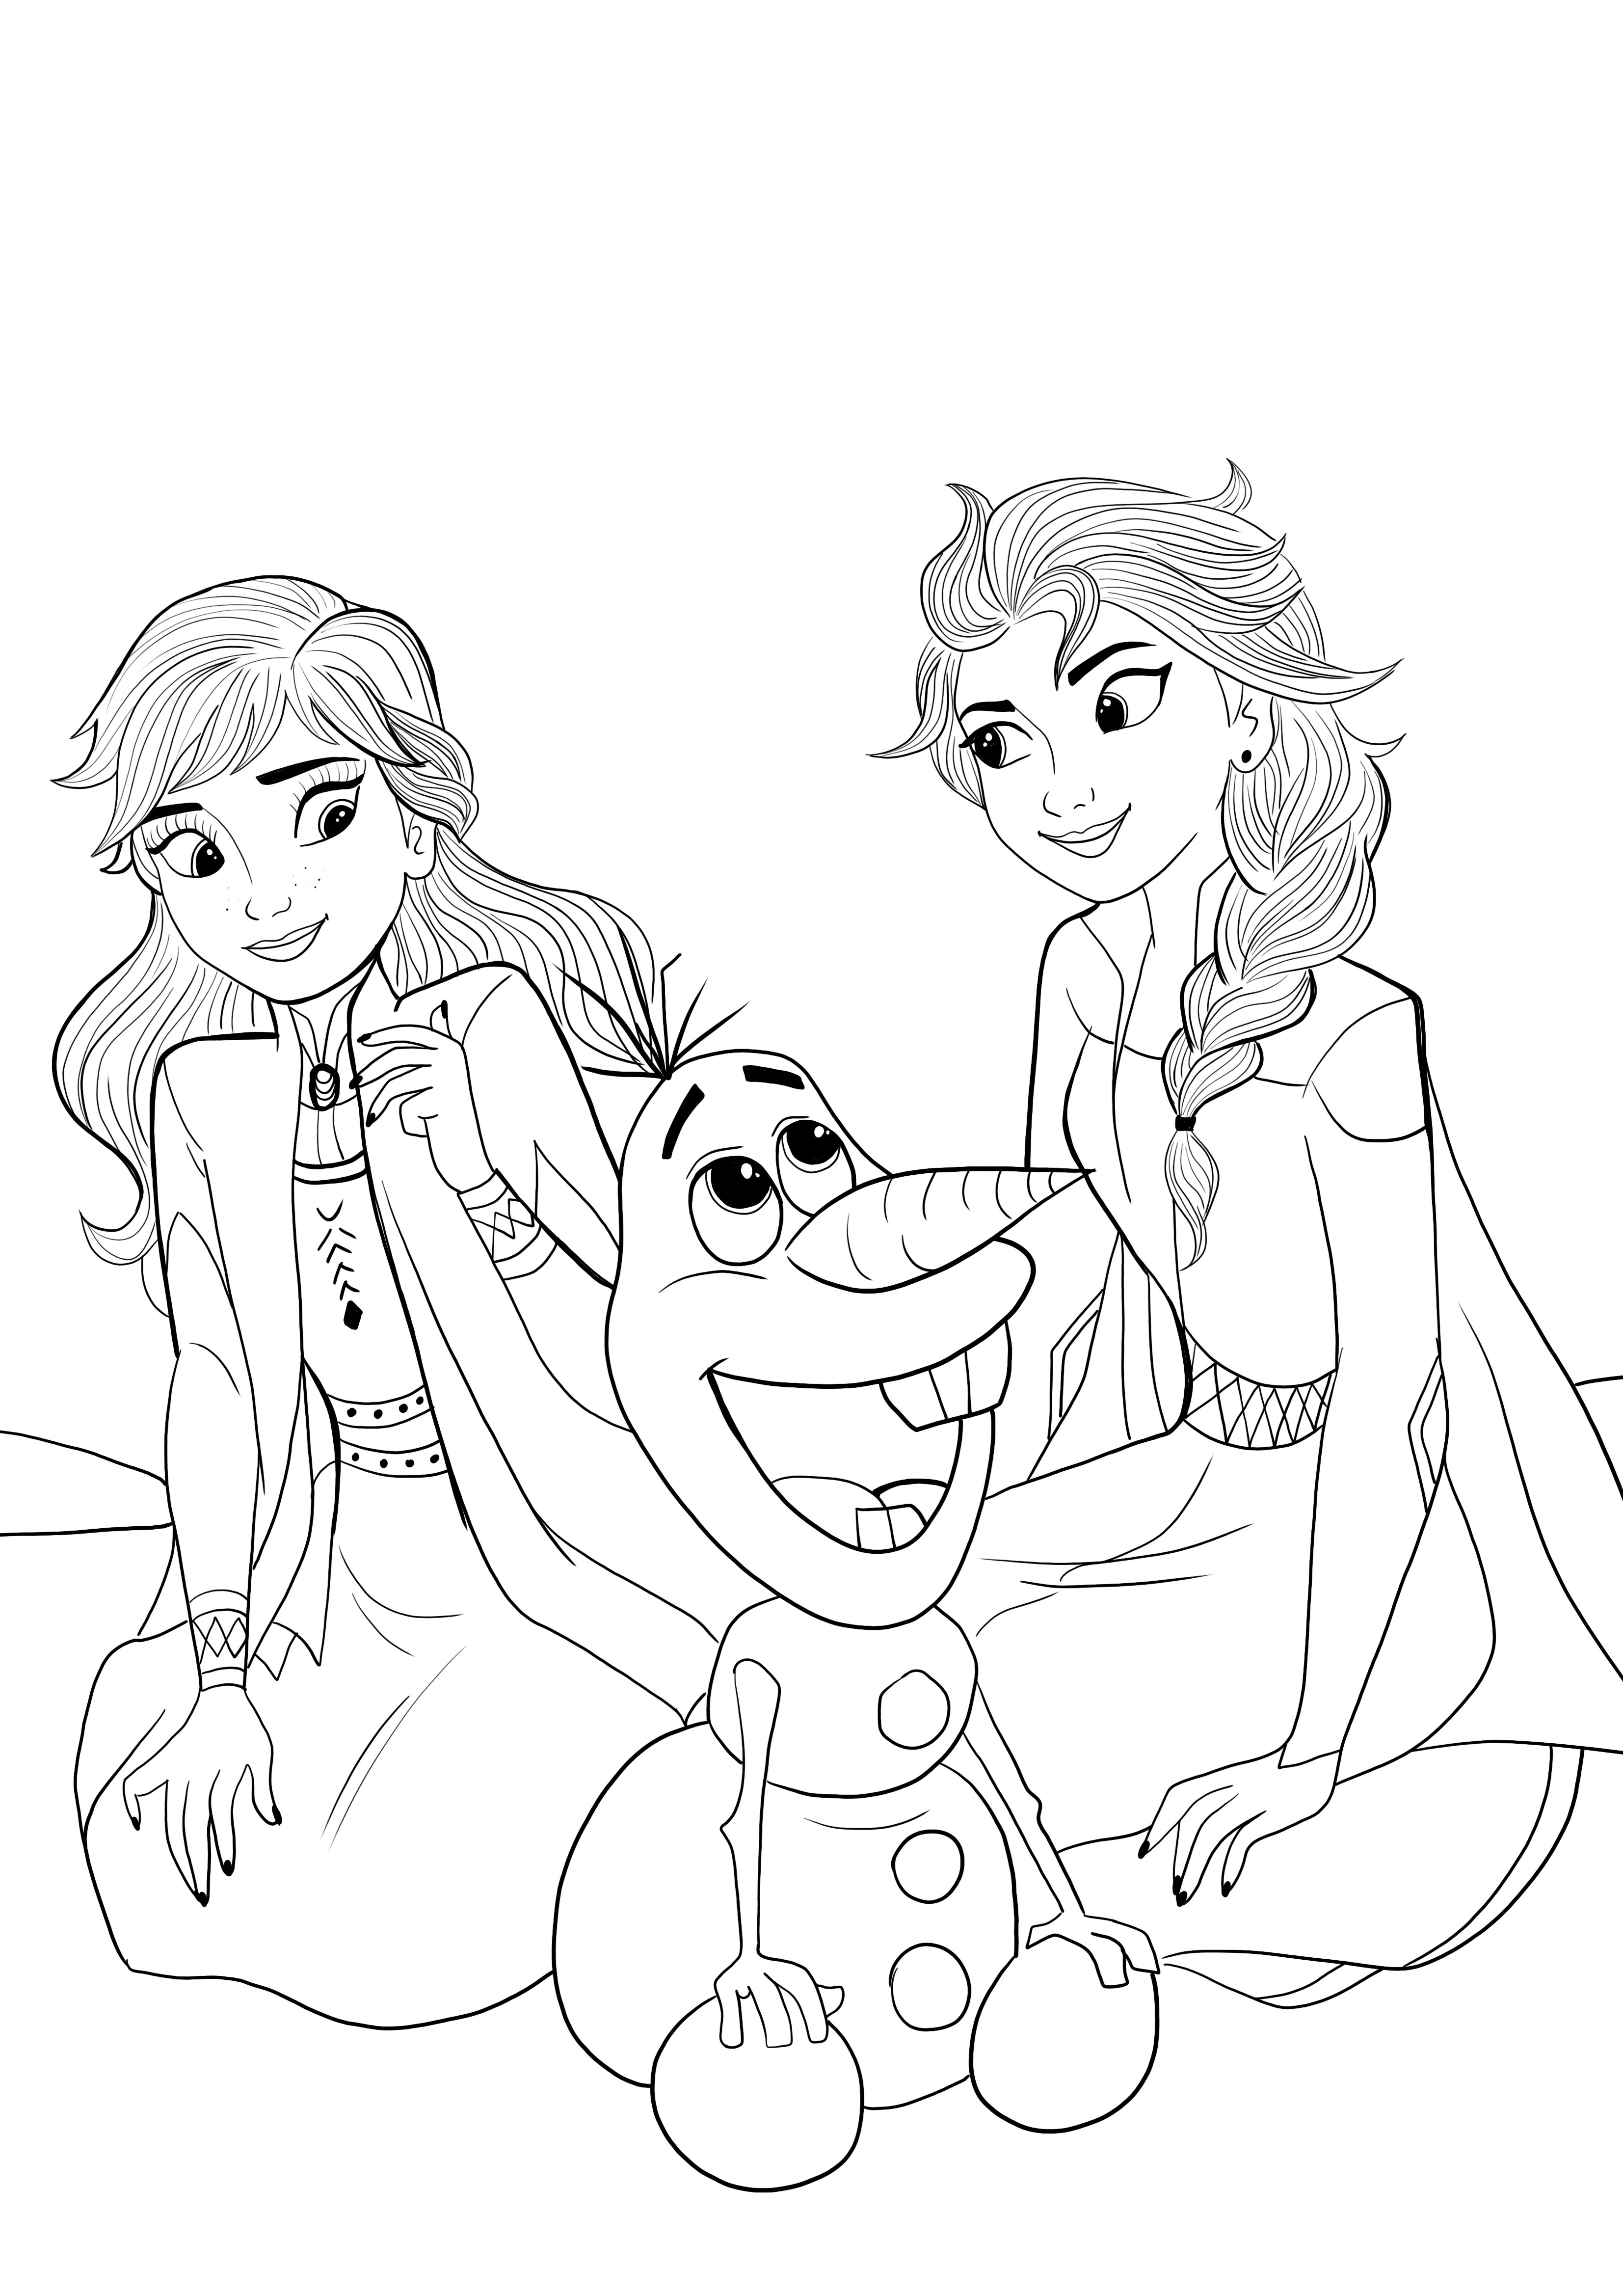 Elsa-Ana-Olaf para colorir e baixar grátis